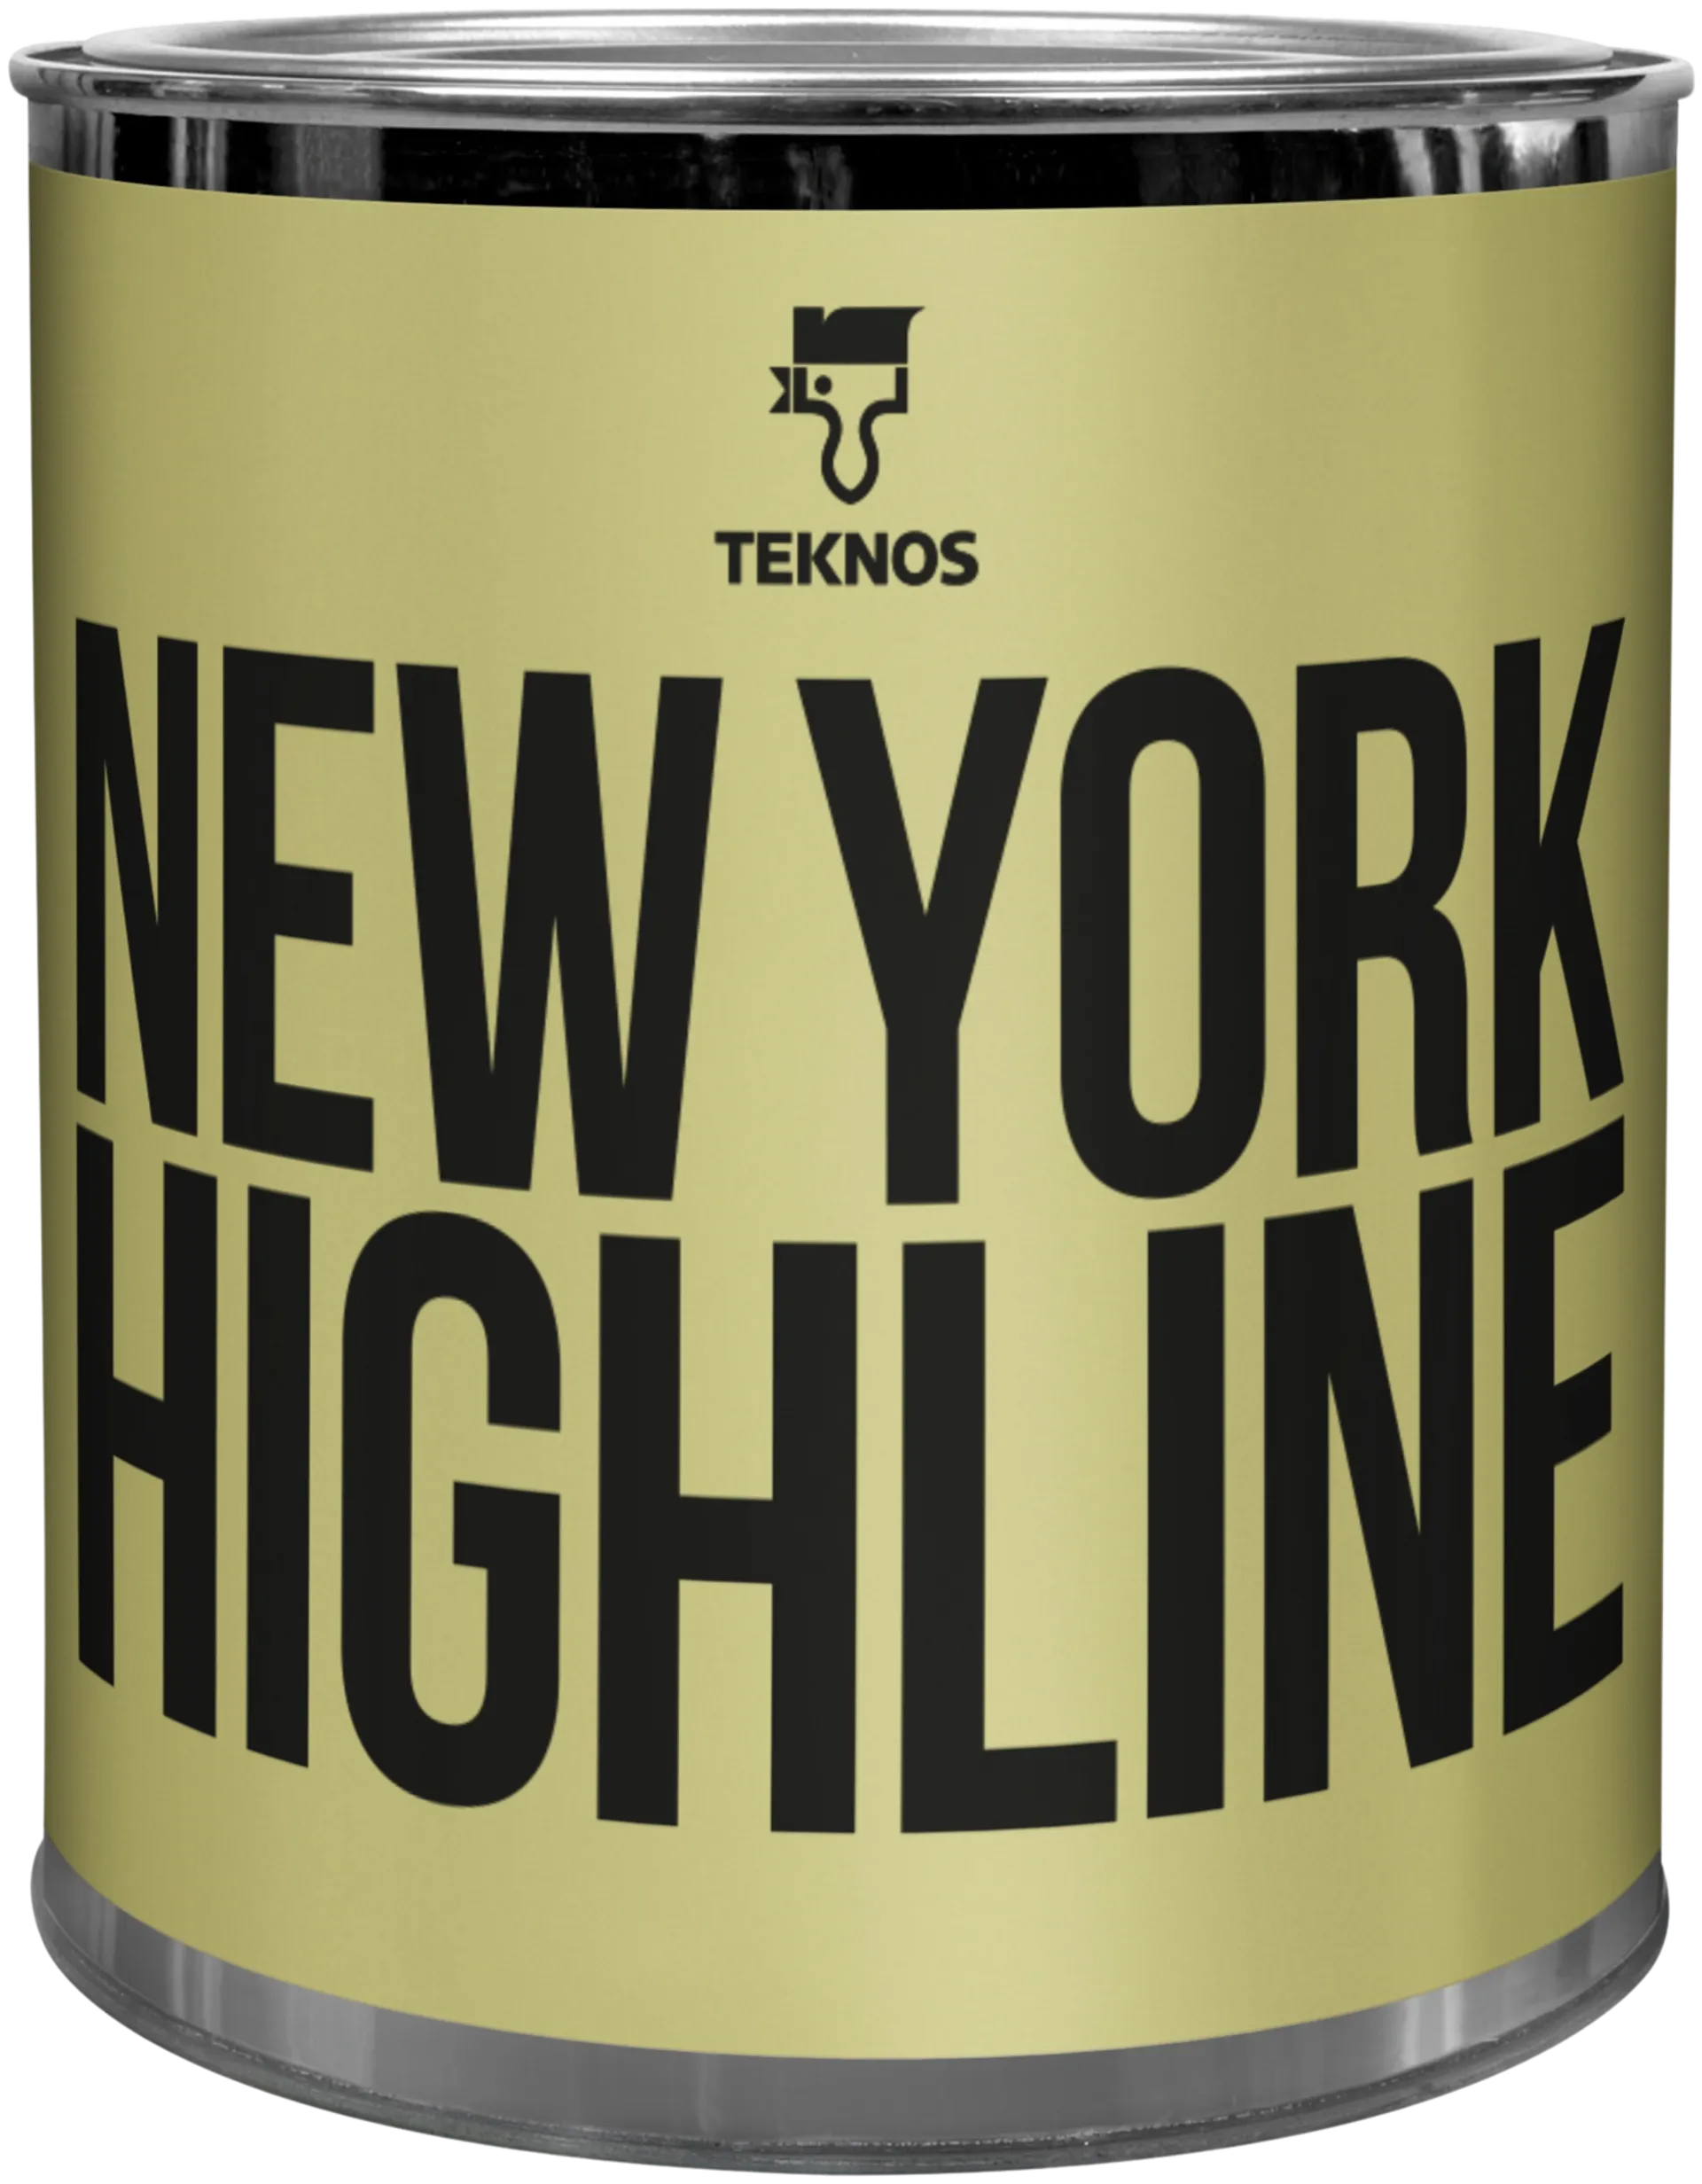 Teknos Colour sample New York highline T1638